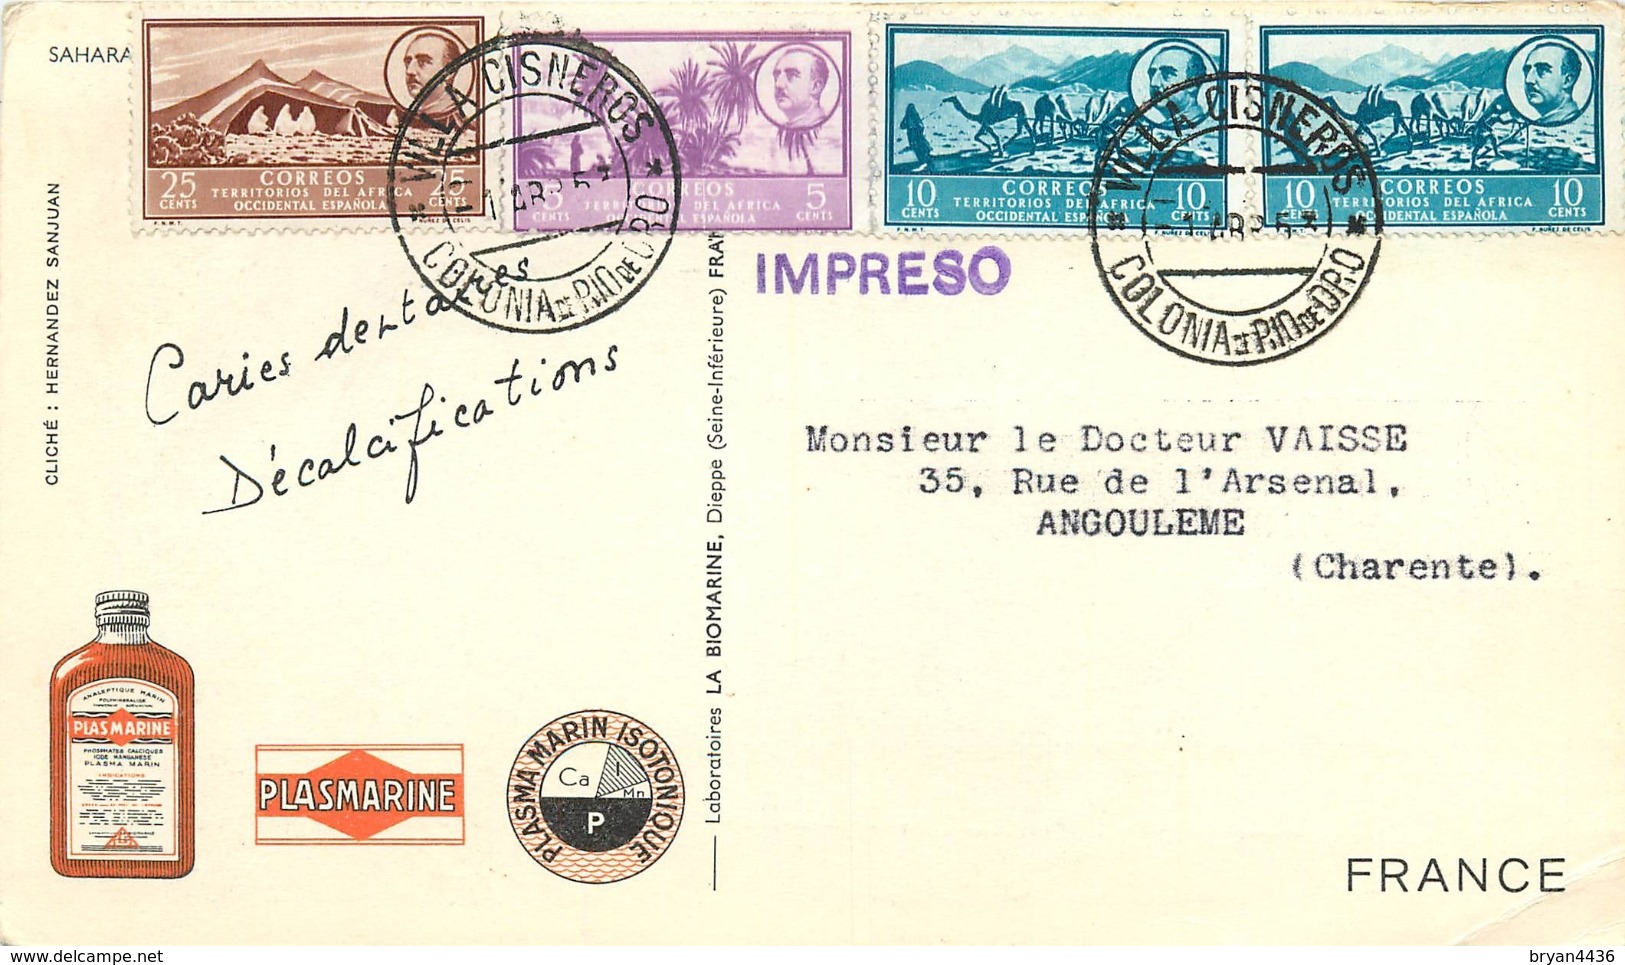 SAHAR - AFRIQUE OCCIDENTALE - 1953 - CORRESPONDANCE -  CARTE  BEDOIN  -  OBLITERATION SUR 4 TIMBRES  "FRANCO". - Asturien & Léon